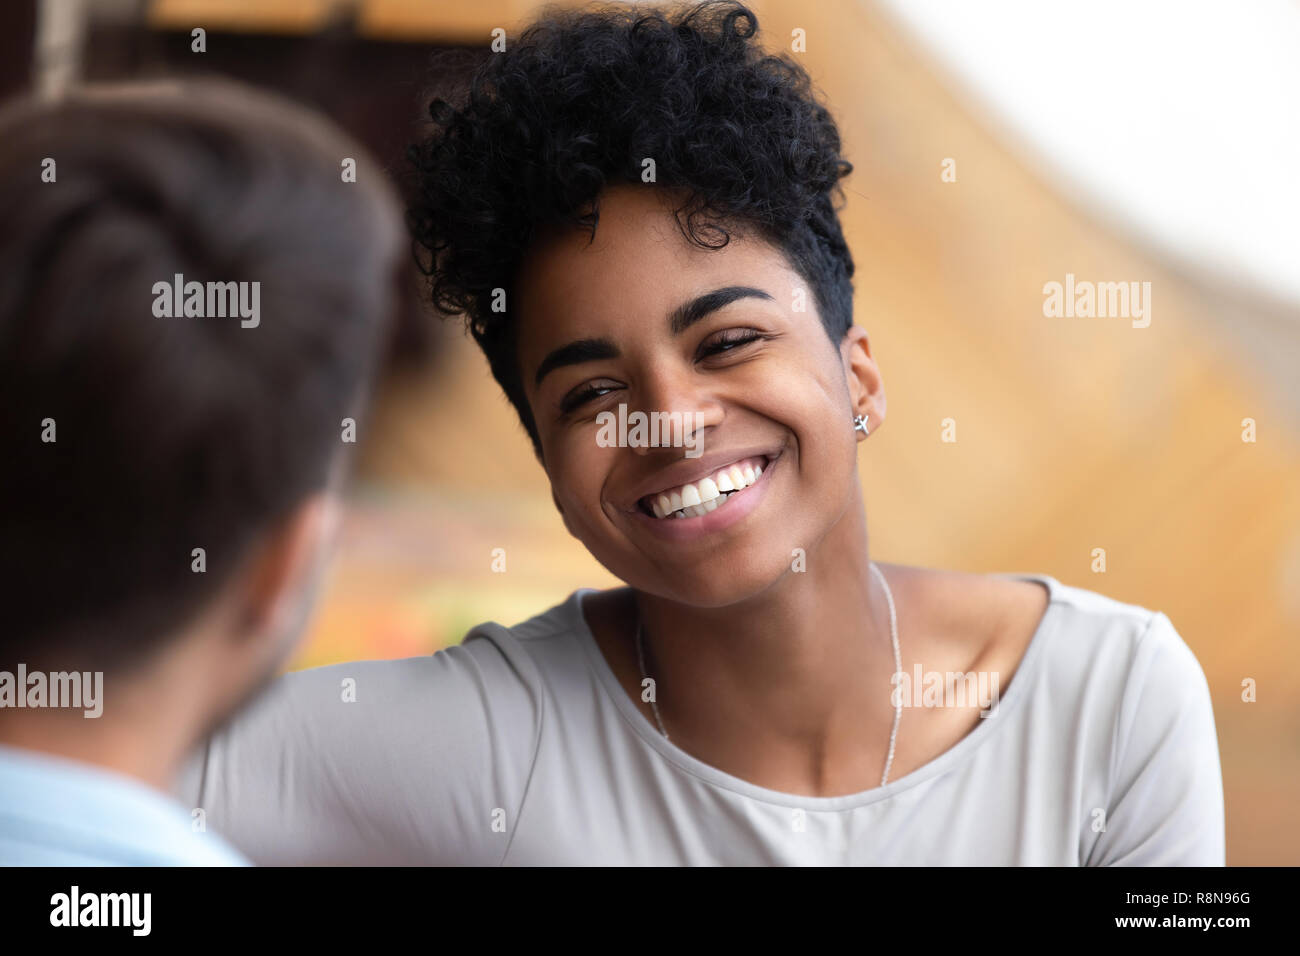 Lächelnd afrikanische amerikanische Frau an Mann in der Nähe suchen Stockfoto